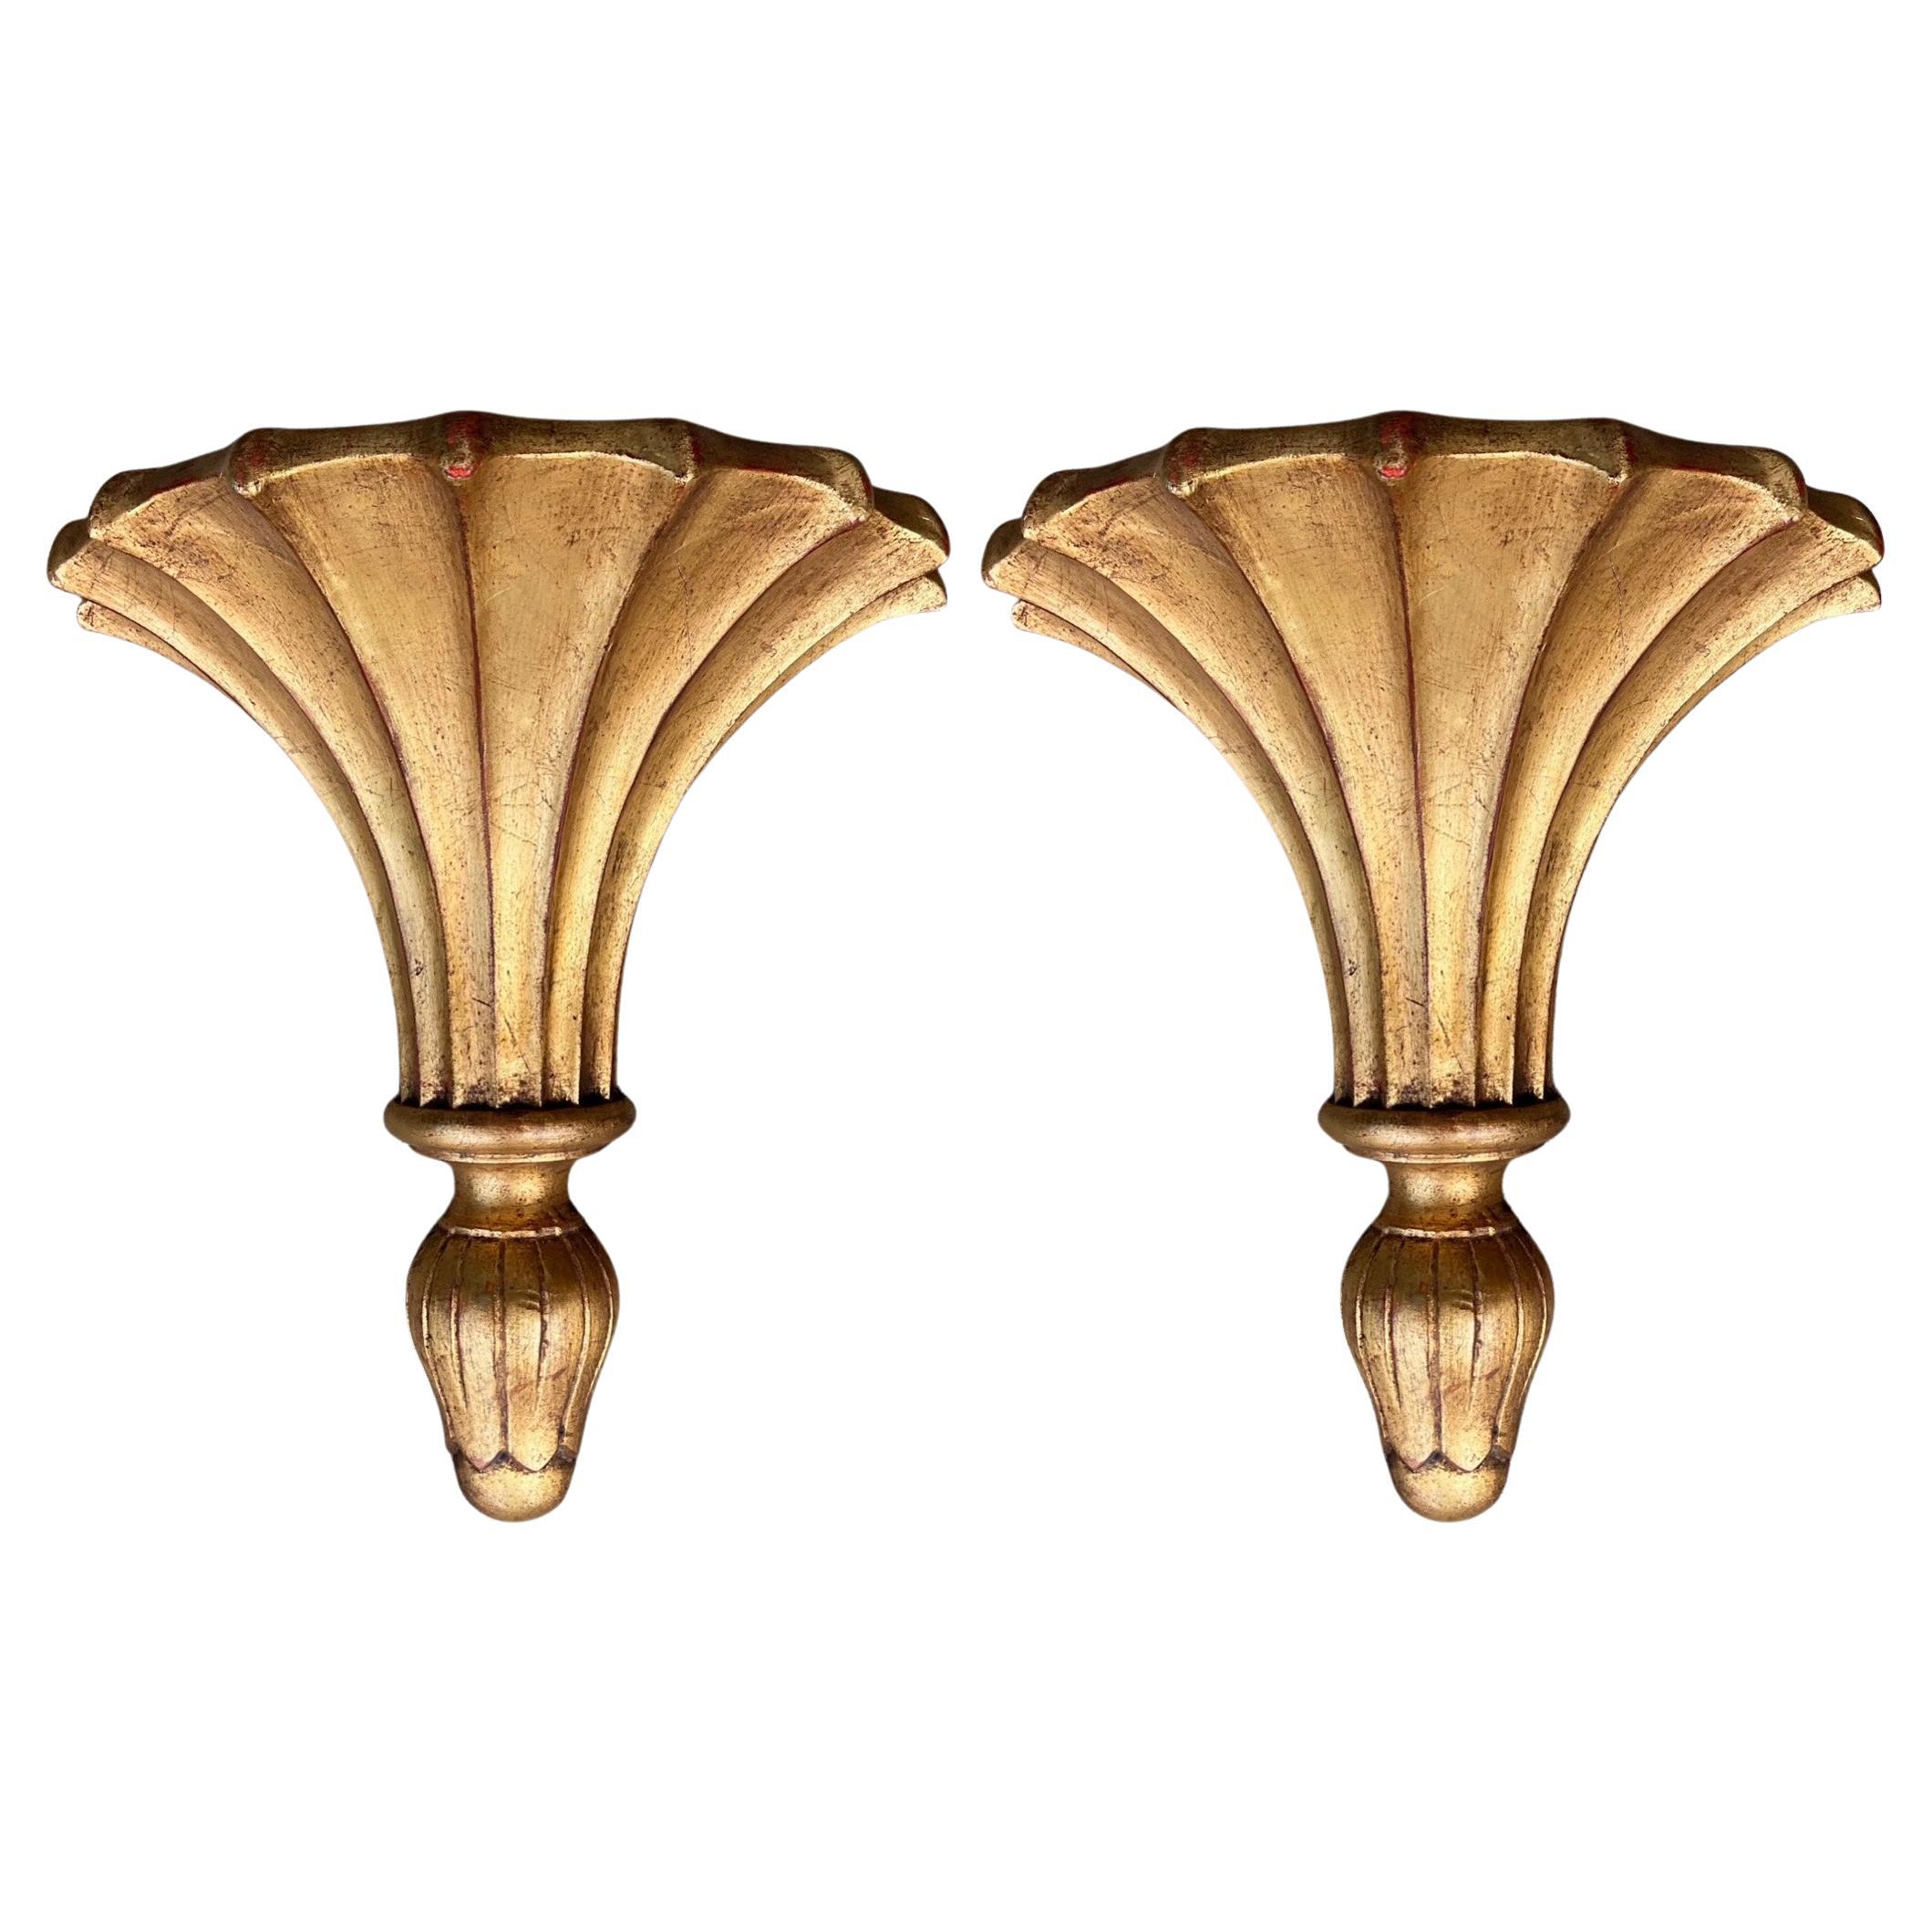 Paire de supports muraux/étagères italiens monumentaux en bois doré sculpté de style Régence